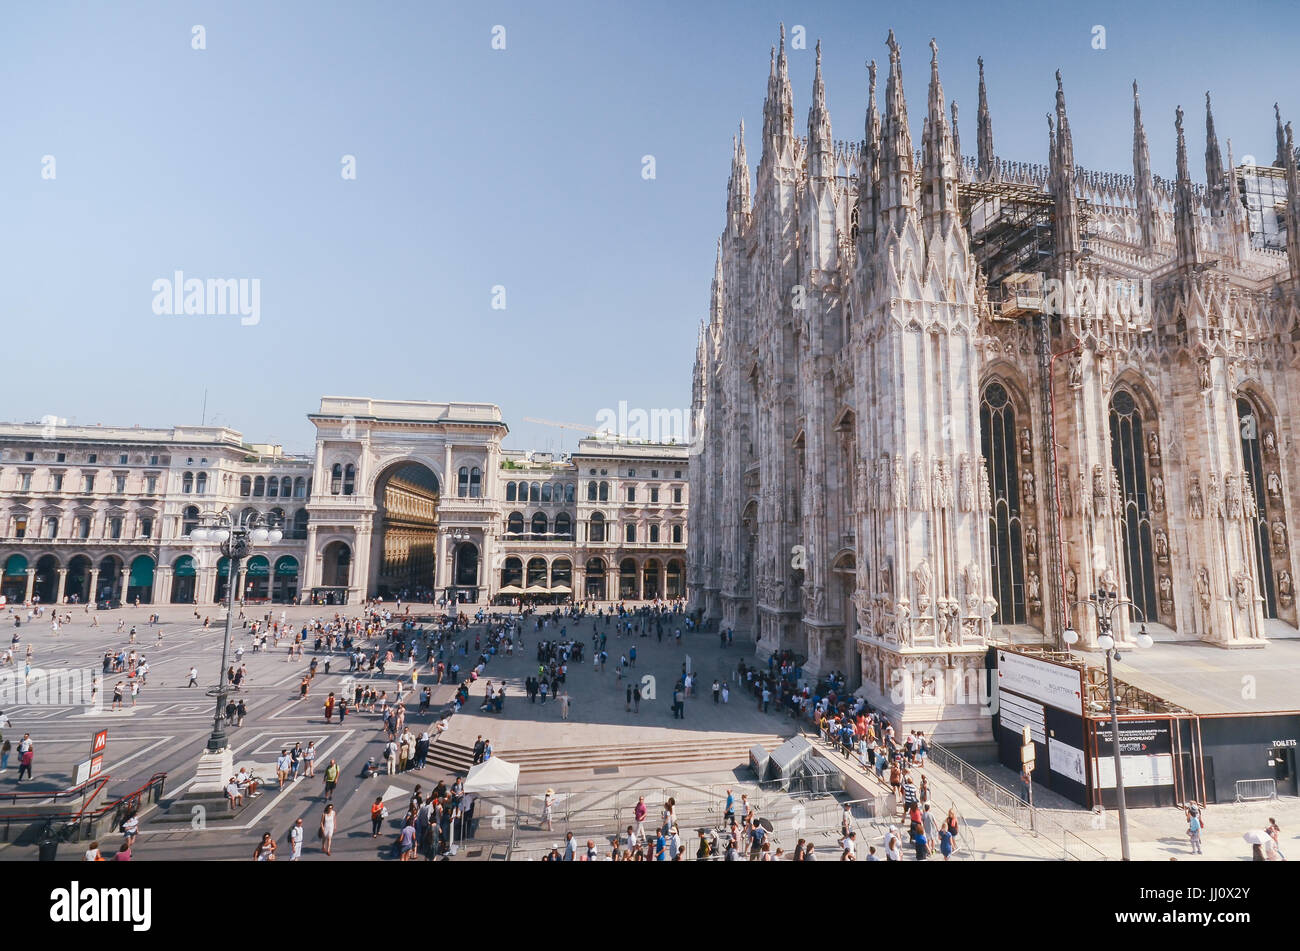 Coda per il Duomo e la chiesa cattedrale, la Piazza del Duomo di Milano, Lombardia, Italia Foto Stock